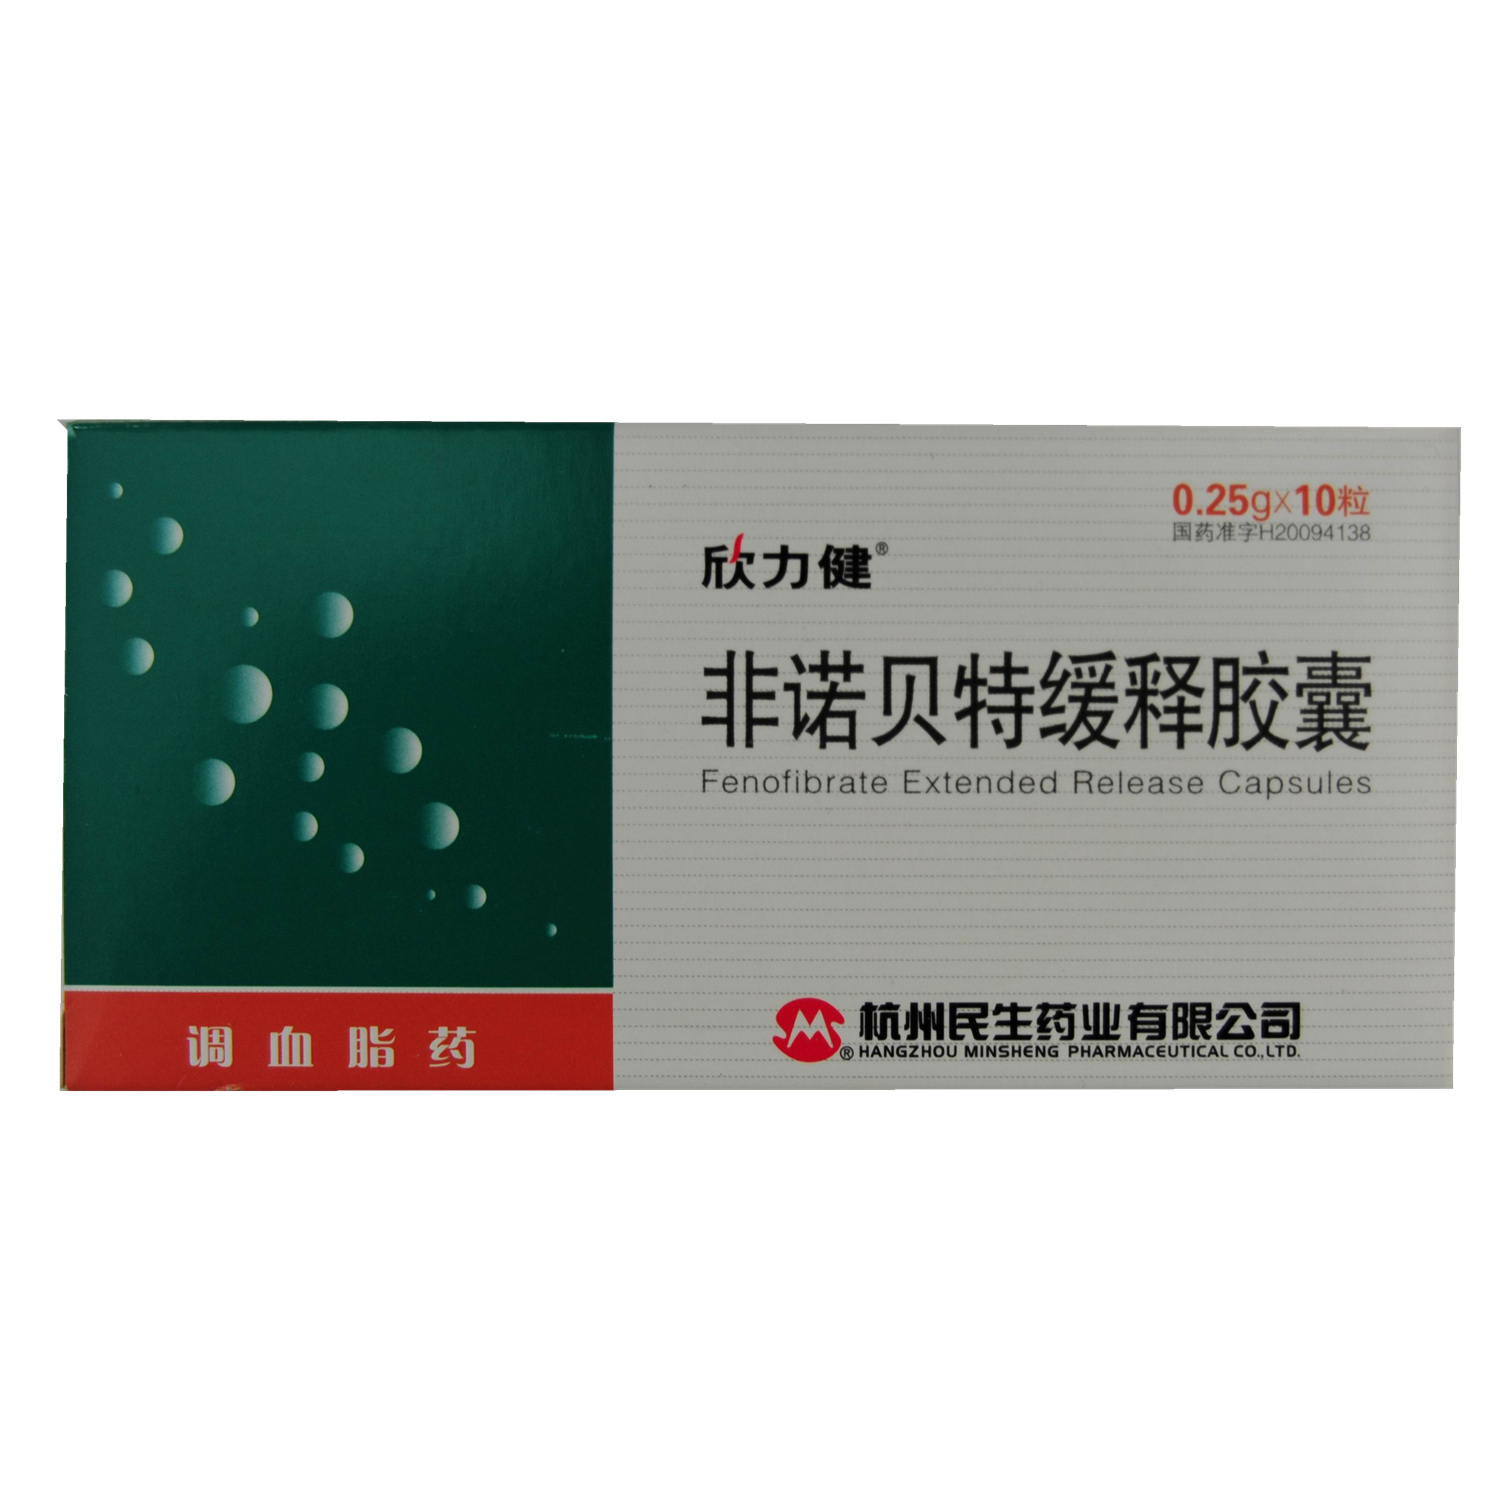 【民生】非诺贝特缓释胶囊-杭州民生药业有限公司